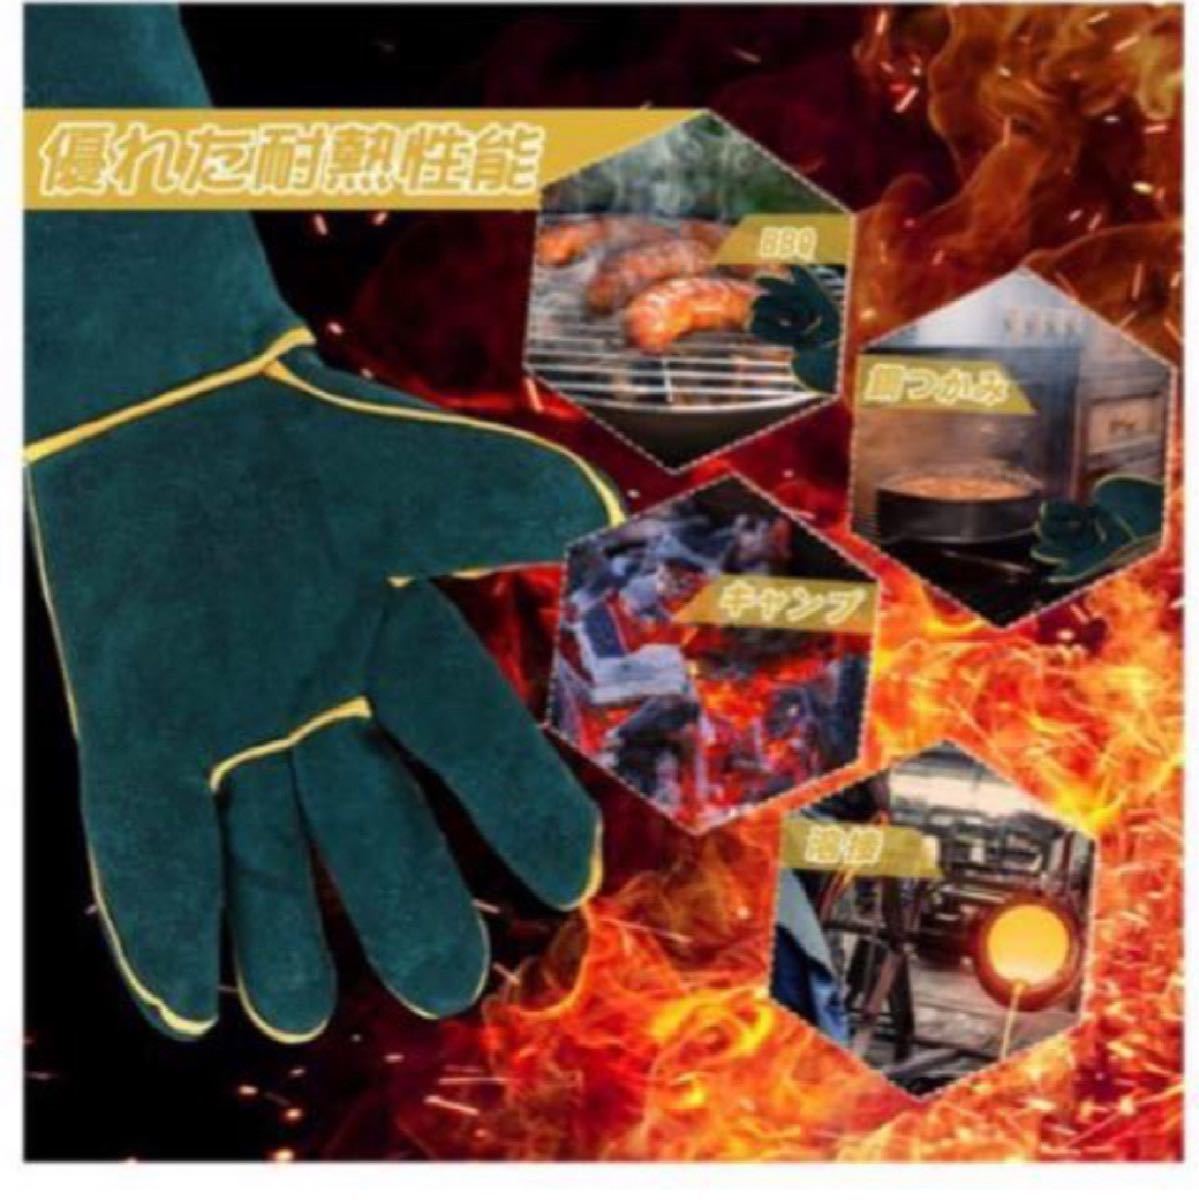 バーベキュー 耐熱グローブ 耐熱 手袋 キャンプグローブ 耐火グローブ 作業用アウトドア用革手袋 防刃 耐火耐熱 溶接/BBQ